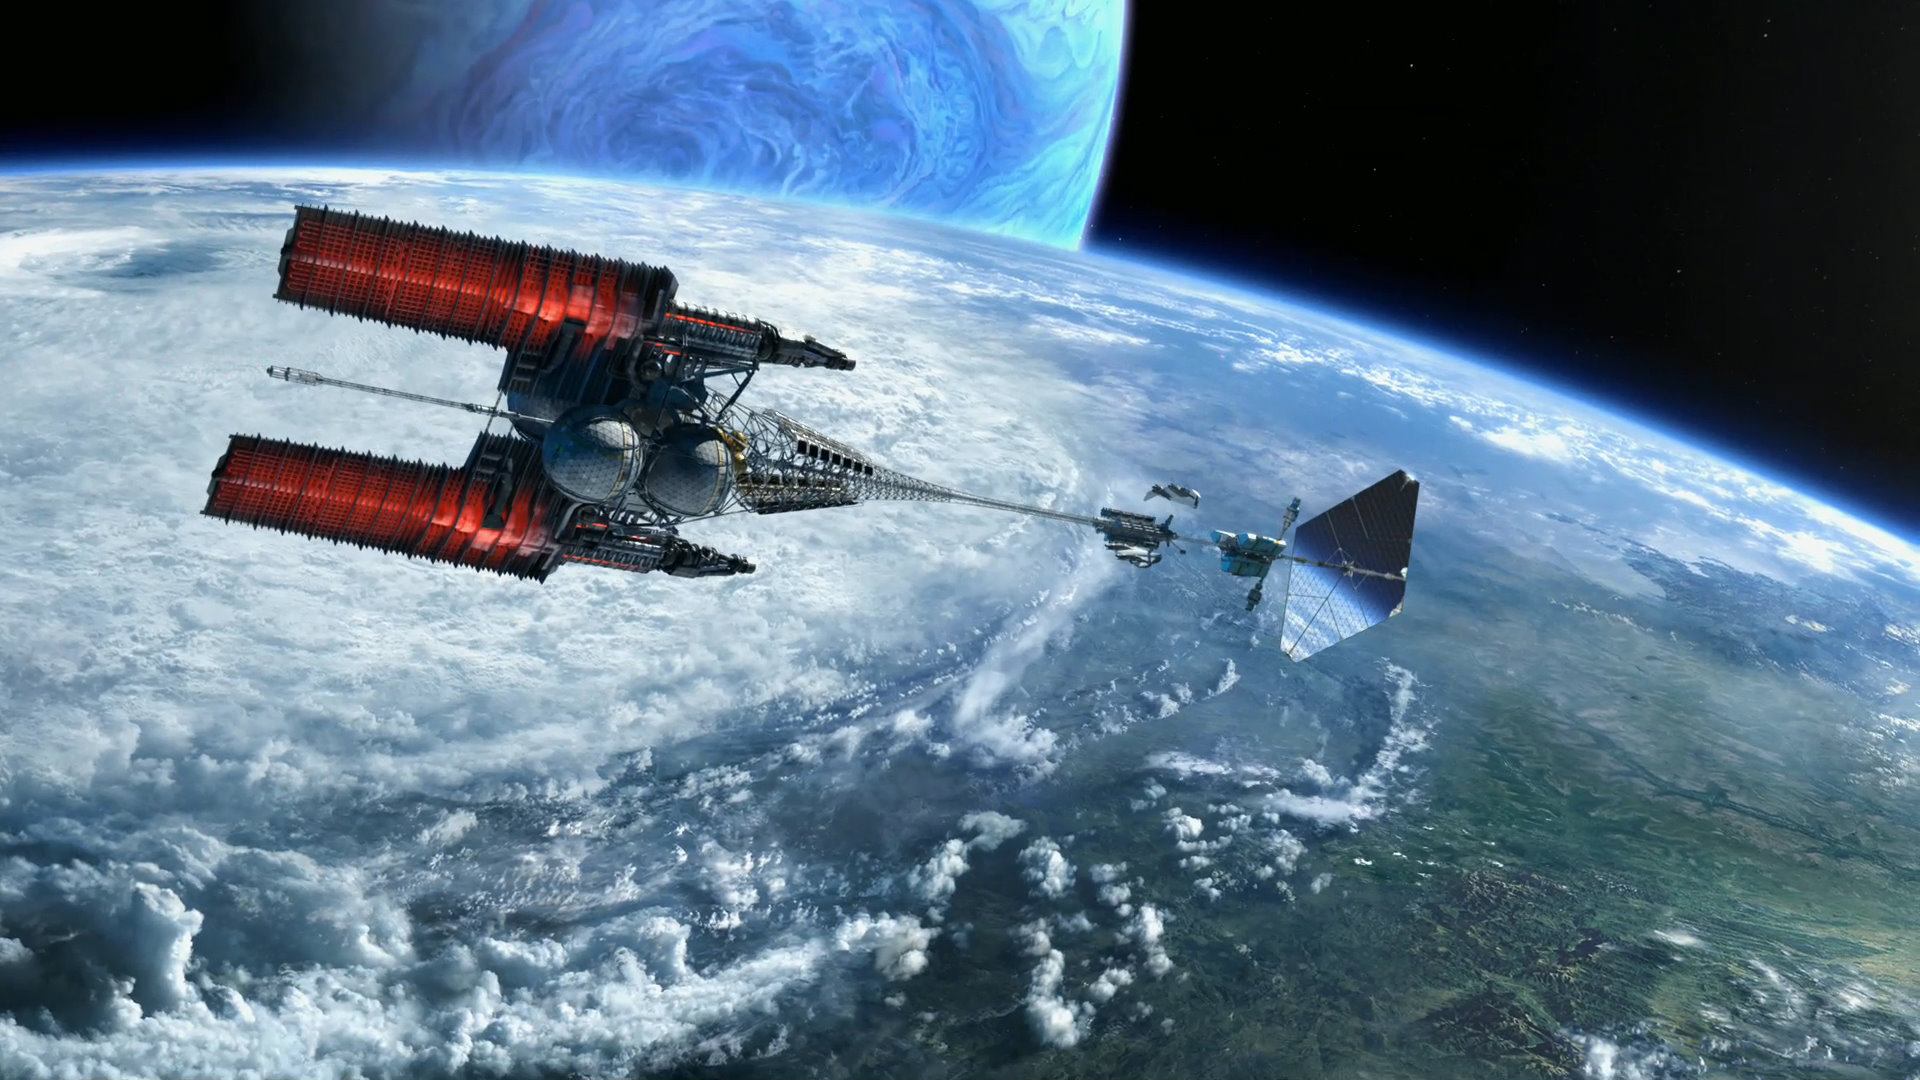 Spaceship Technology in Avatar is the Valkyrie Antimatter Rocket Design   NextBigFuturecom